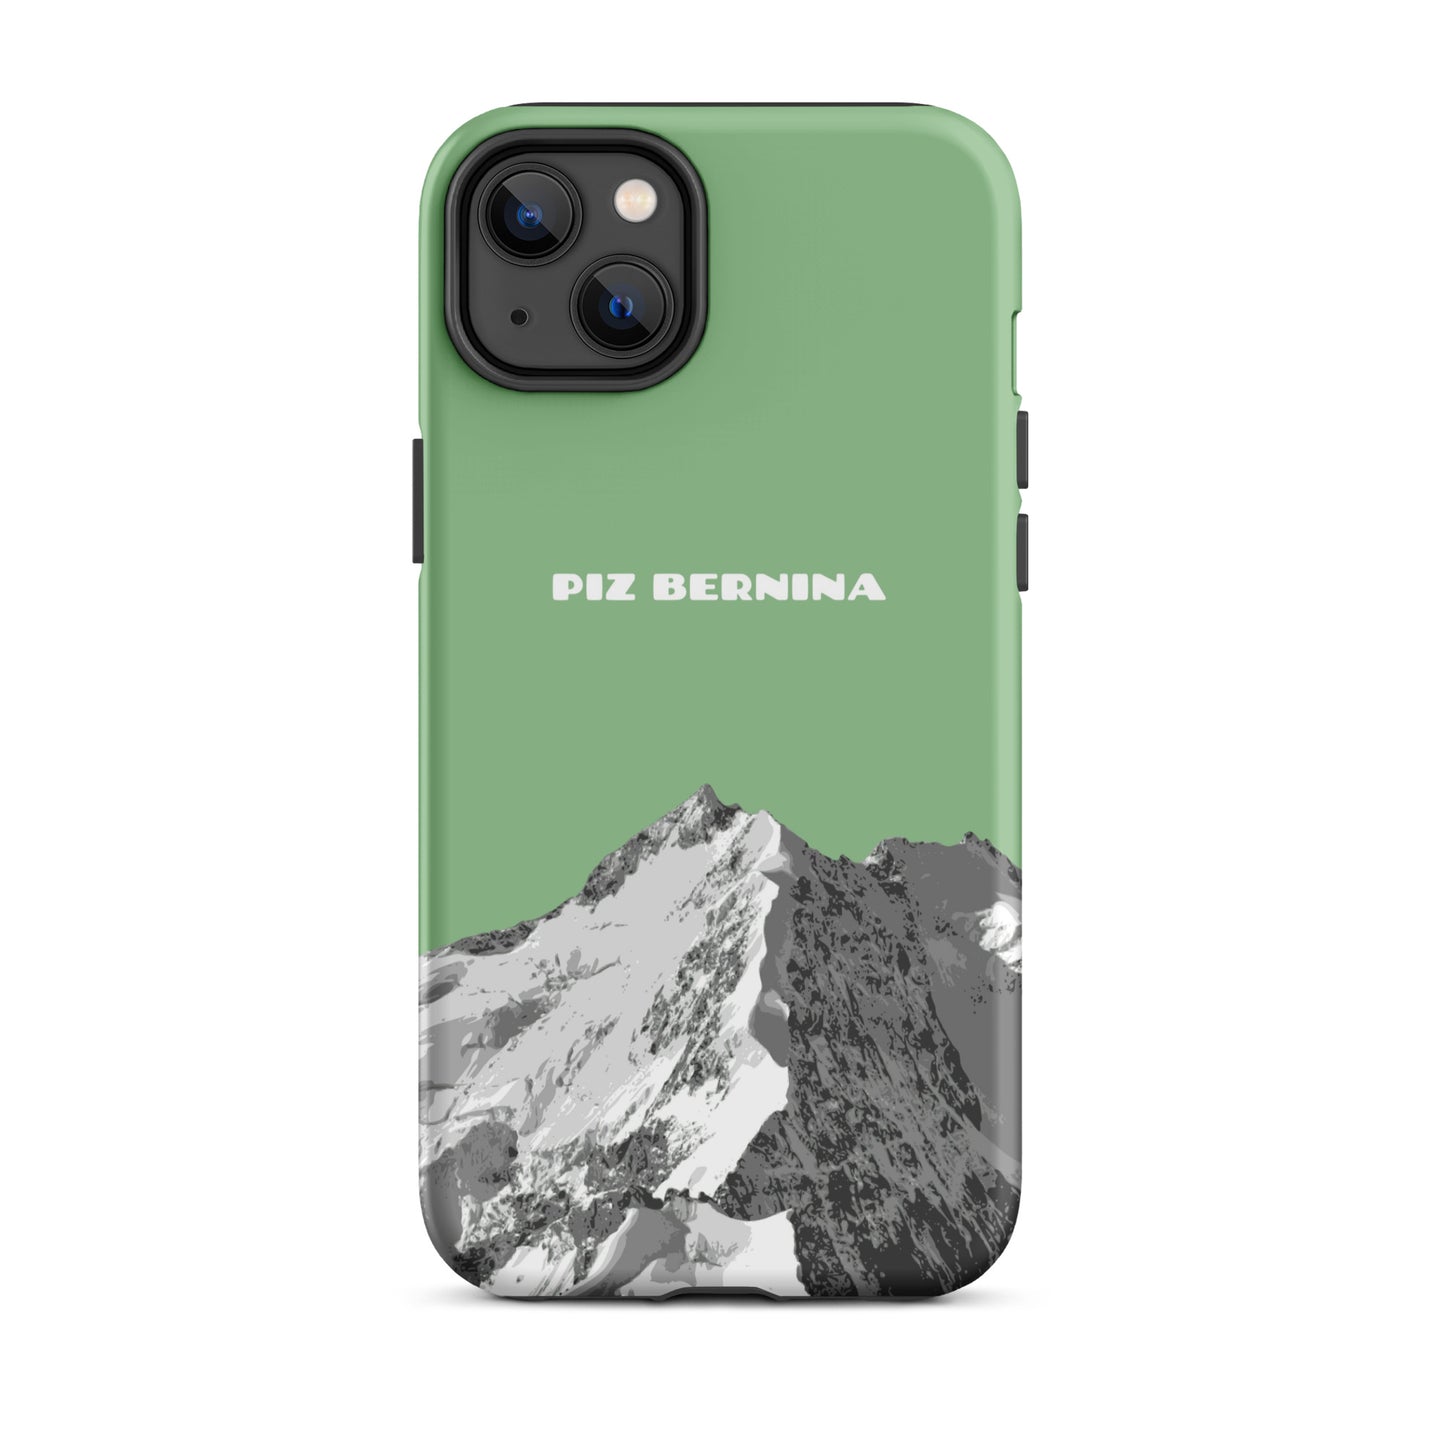 Hülle für das iPhone 14 Plus von Apple in der Farbe Hellgrün, dass den Piz Bernina in Graubünden zeigt.